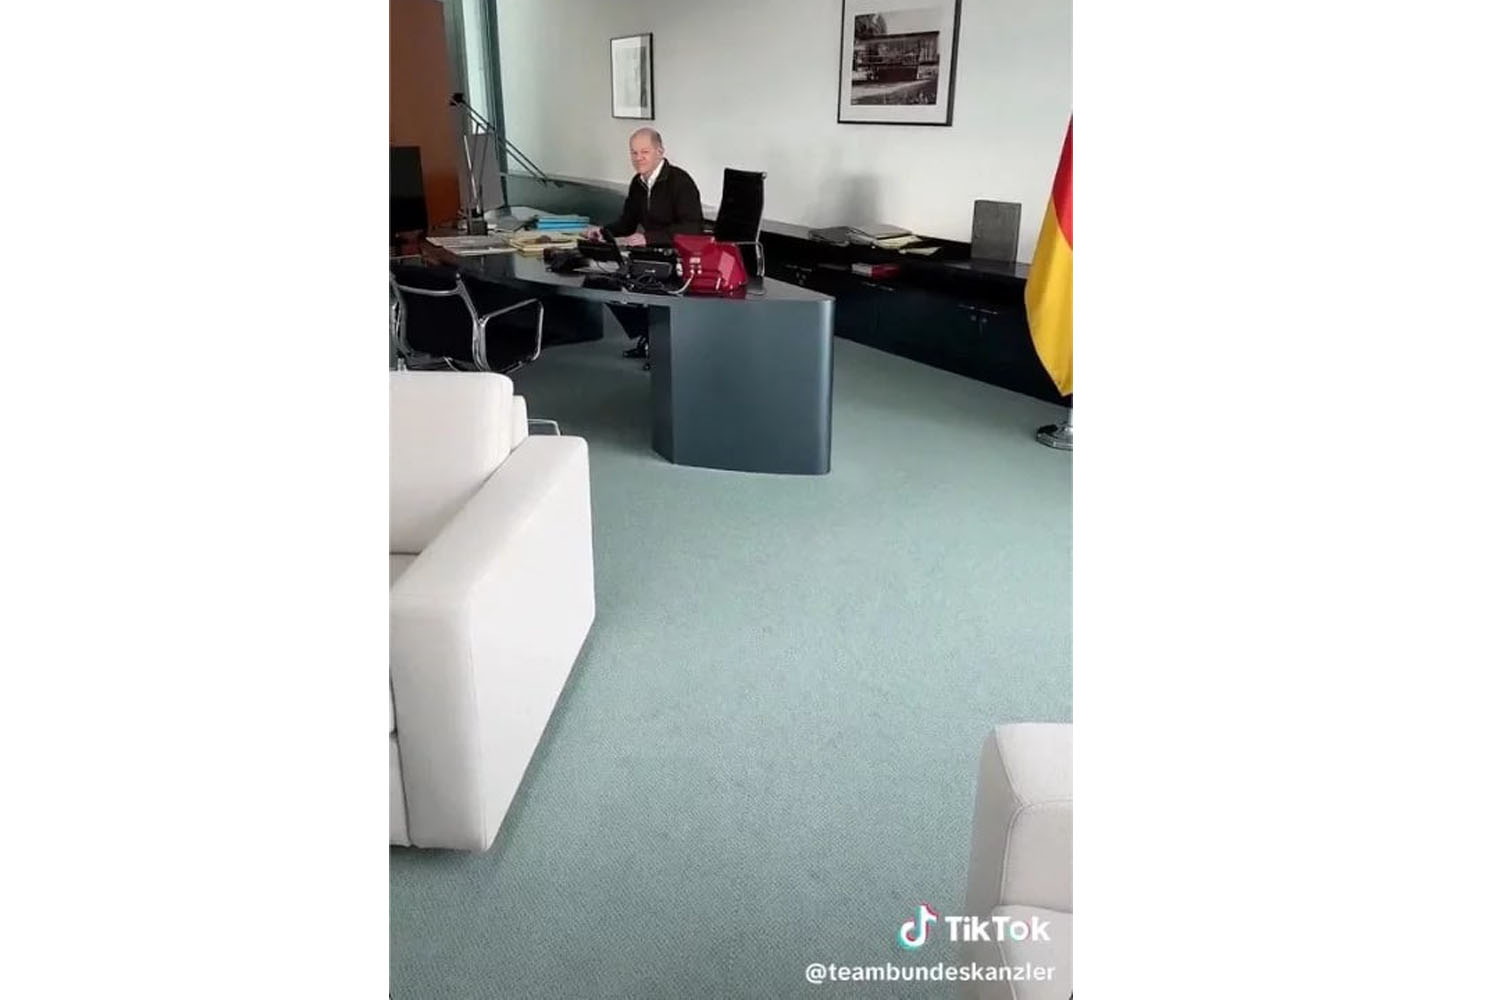 德國總理加入TikTok